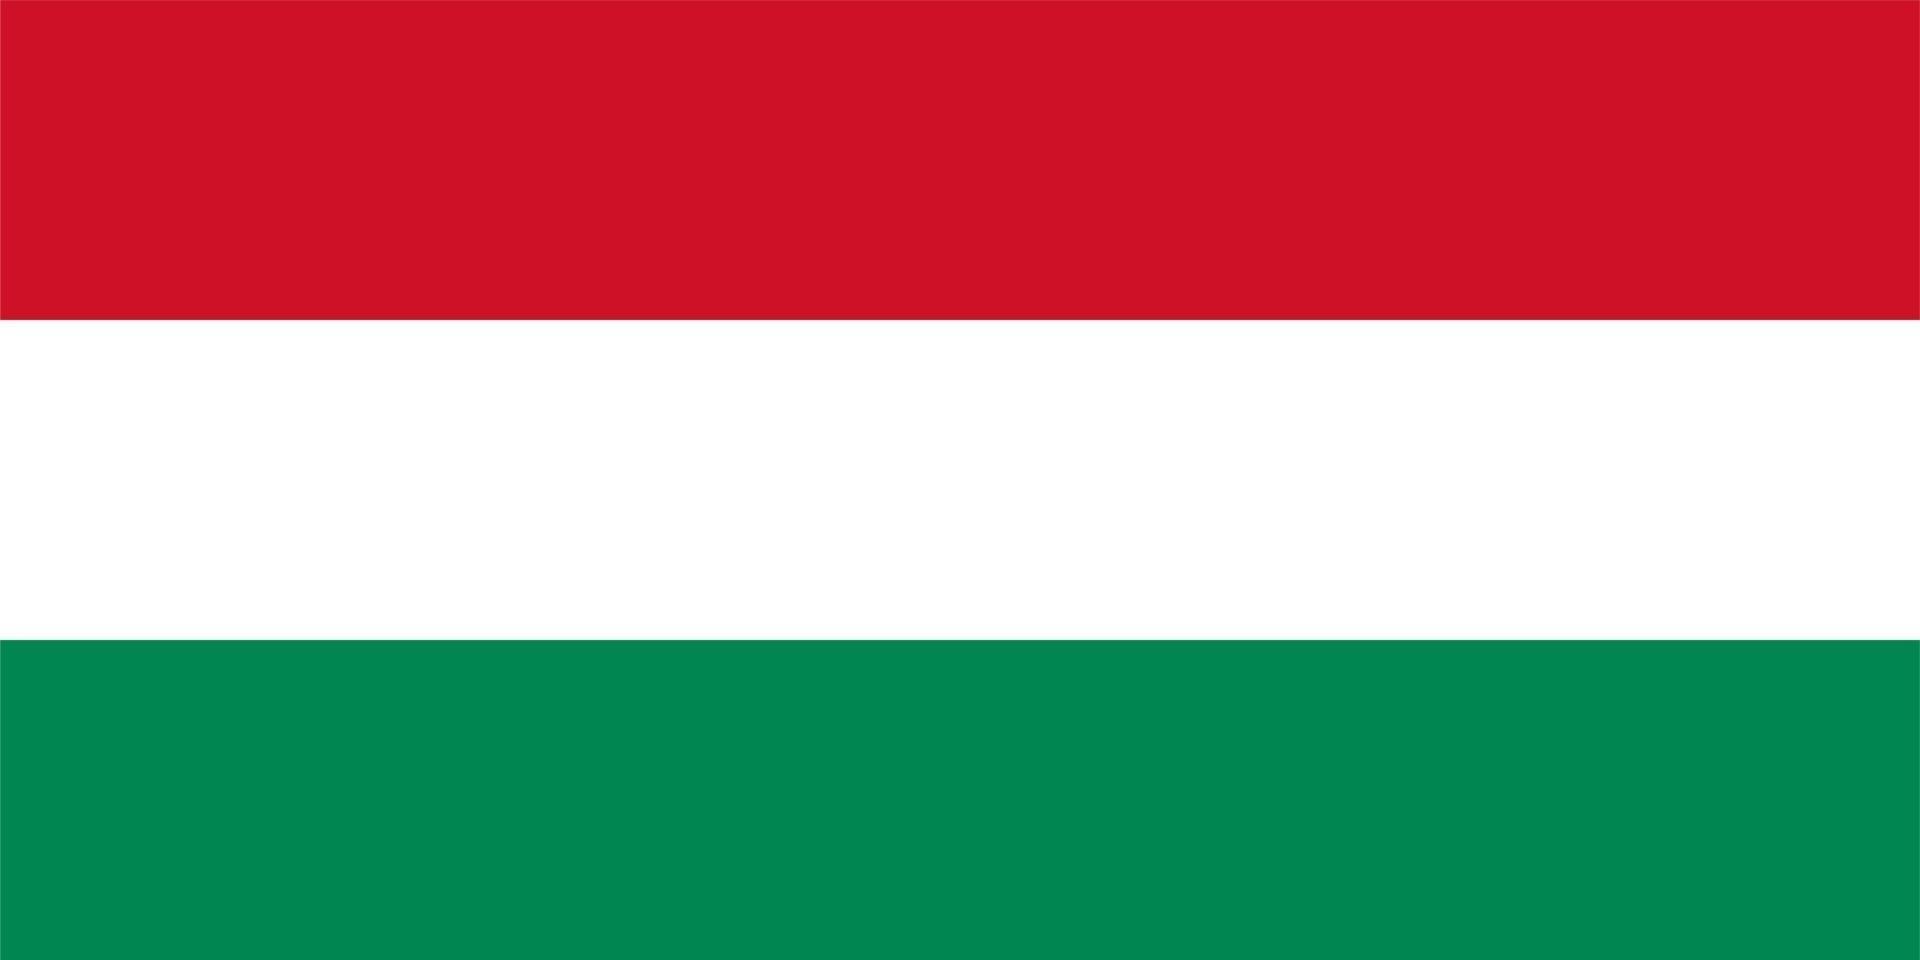 bandeira húngara da hungria vetor